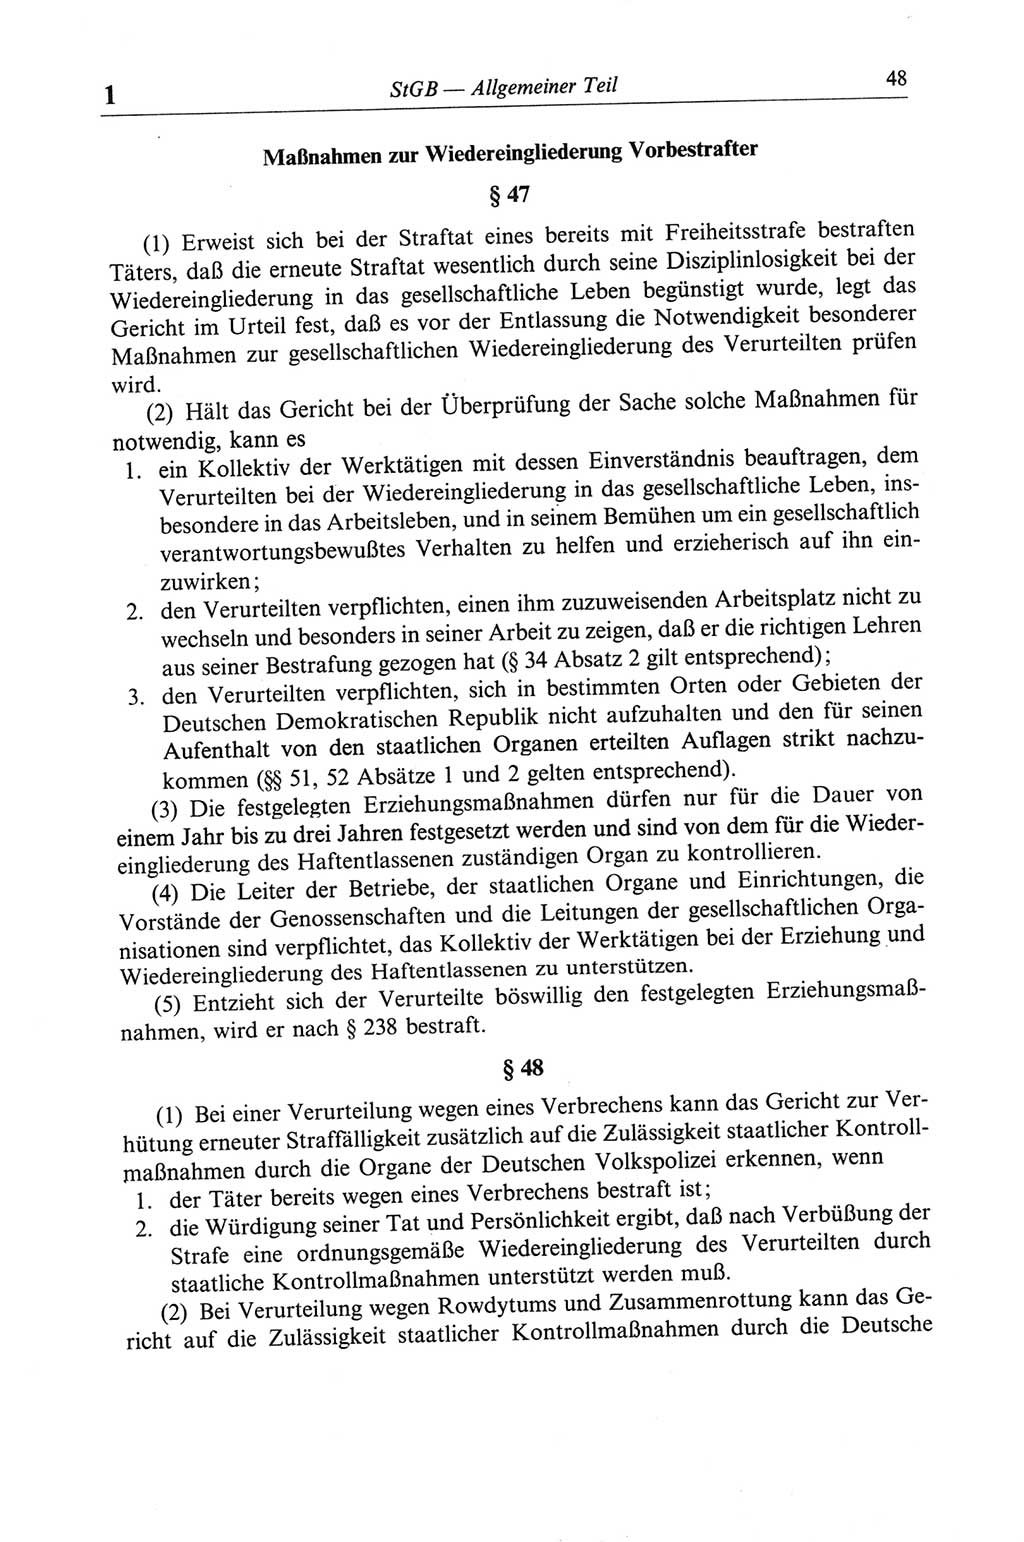 Strafgesetzbuch (StGB) der Deutschen Demokratischen Republik (DDR) und angrenzende Gesetze und Bestimmungen 1968, Seite 48 (StGB Ges. Best. DDR 1968, S. 48)